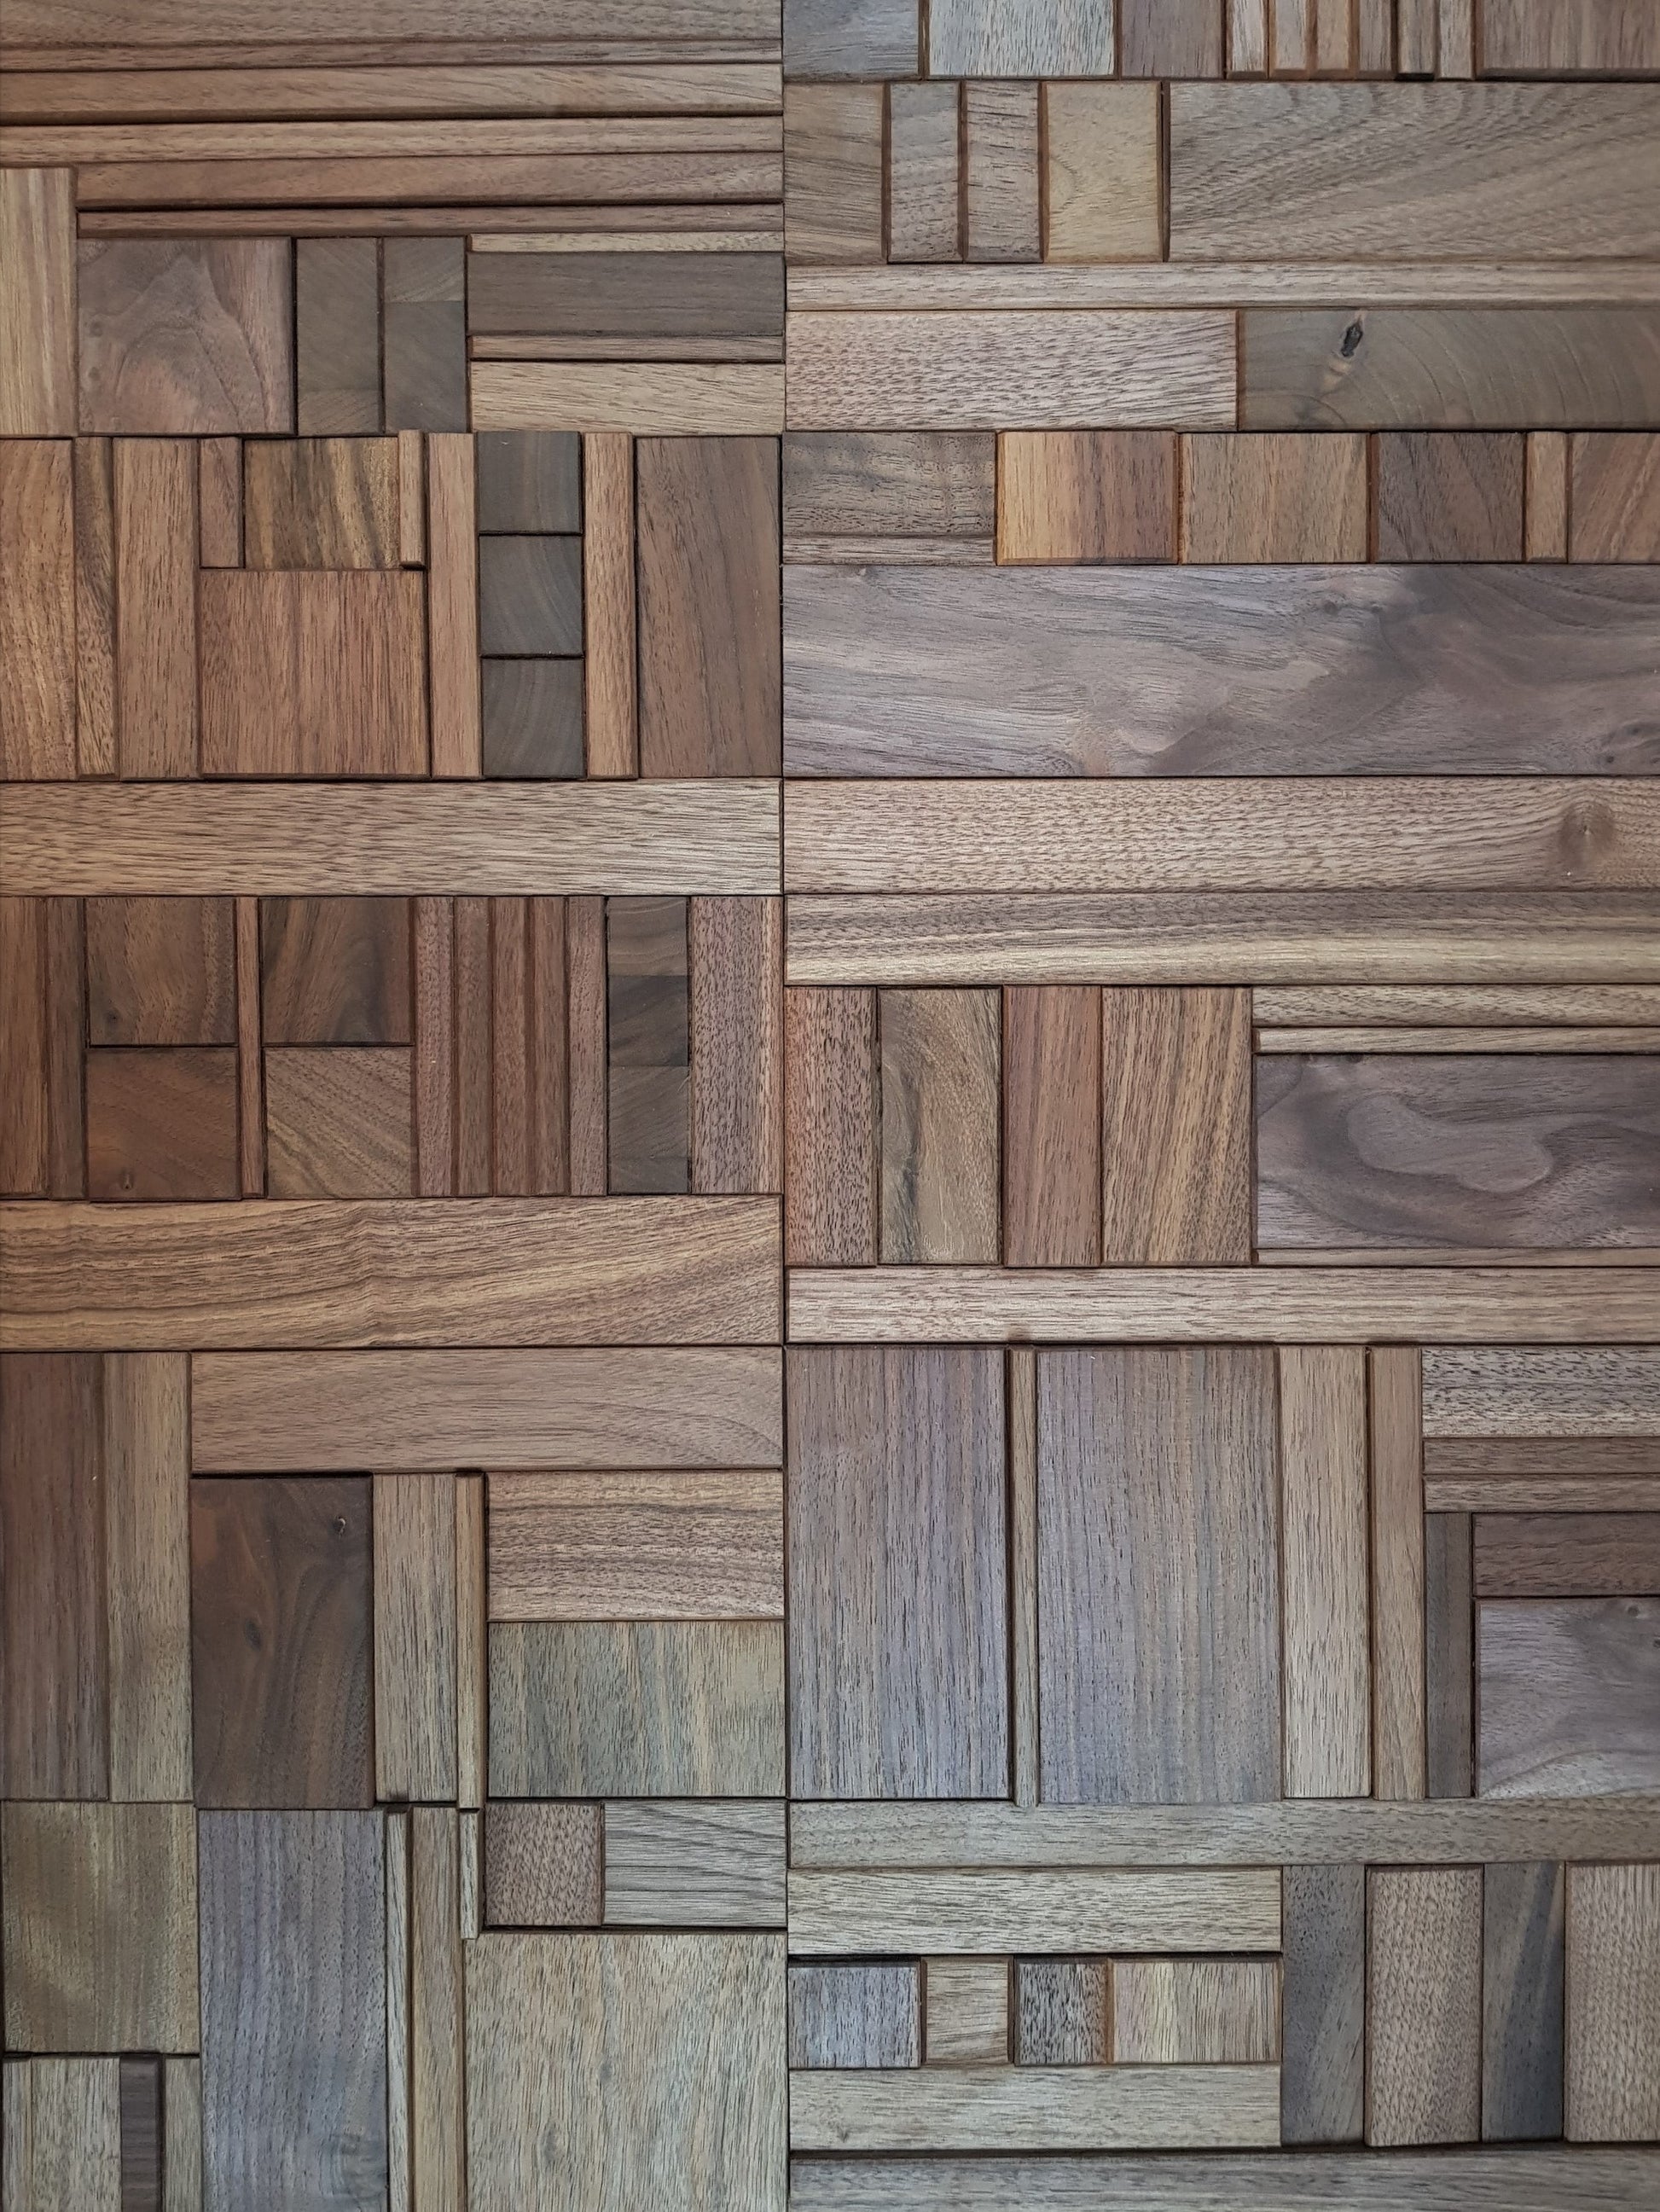 Black walnut wall tiles in true random pattern